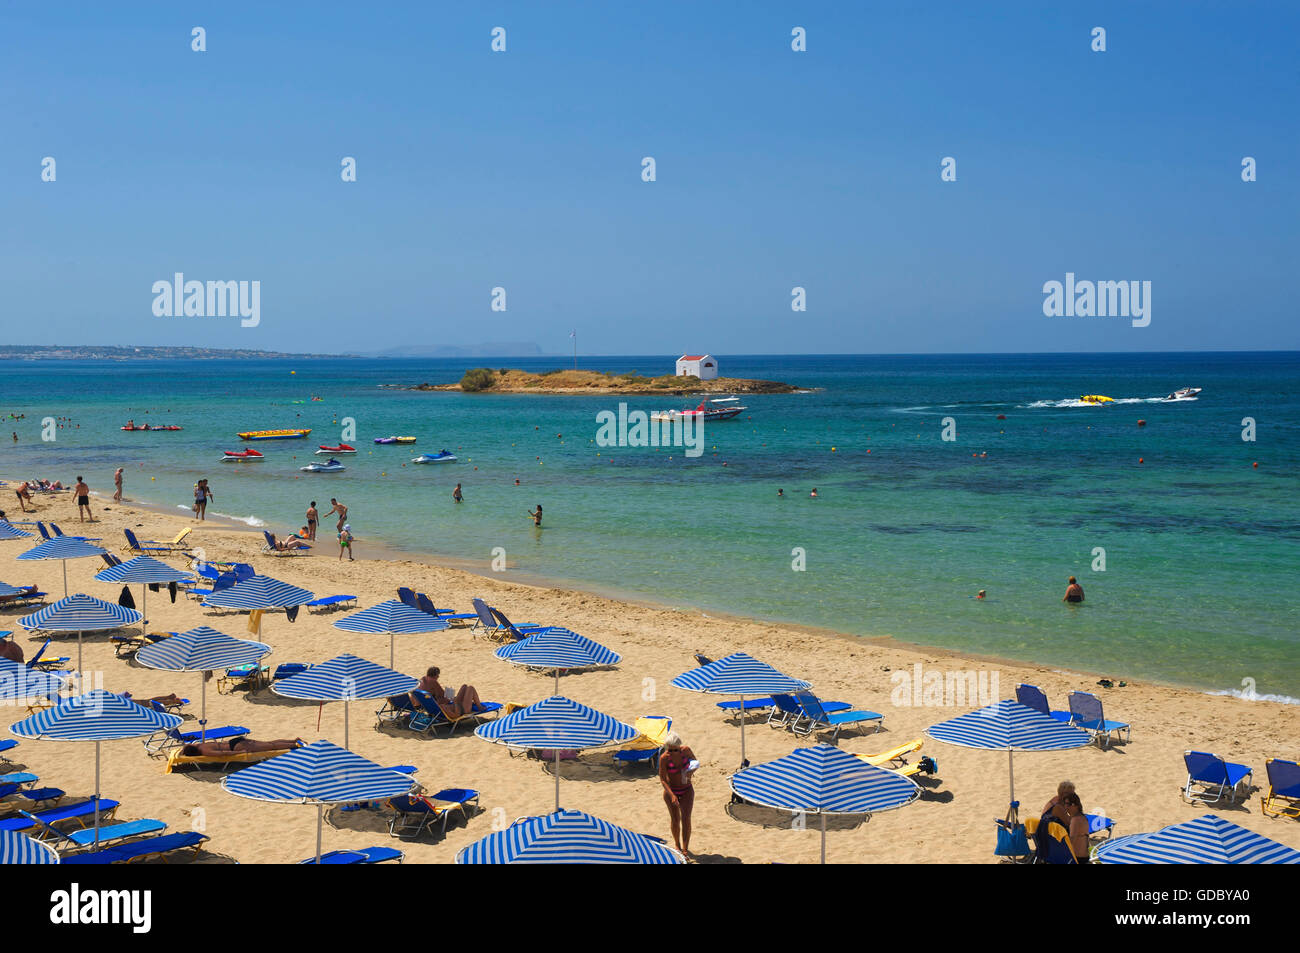 La plage de Malia, Crète, Grèce Banque D'Images